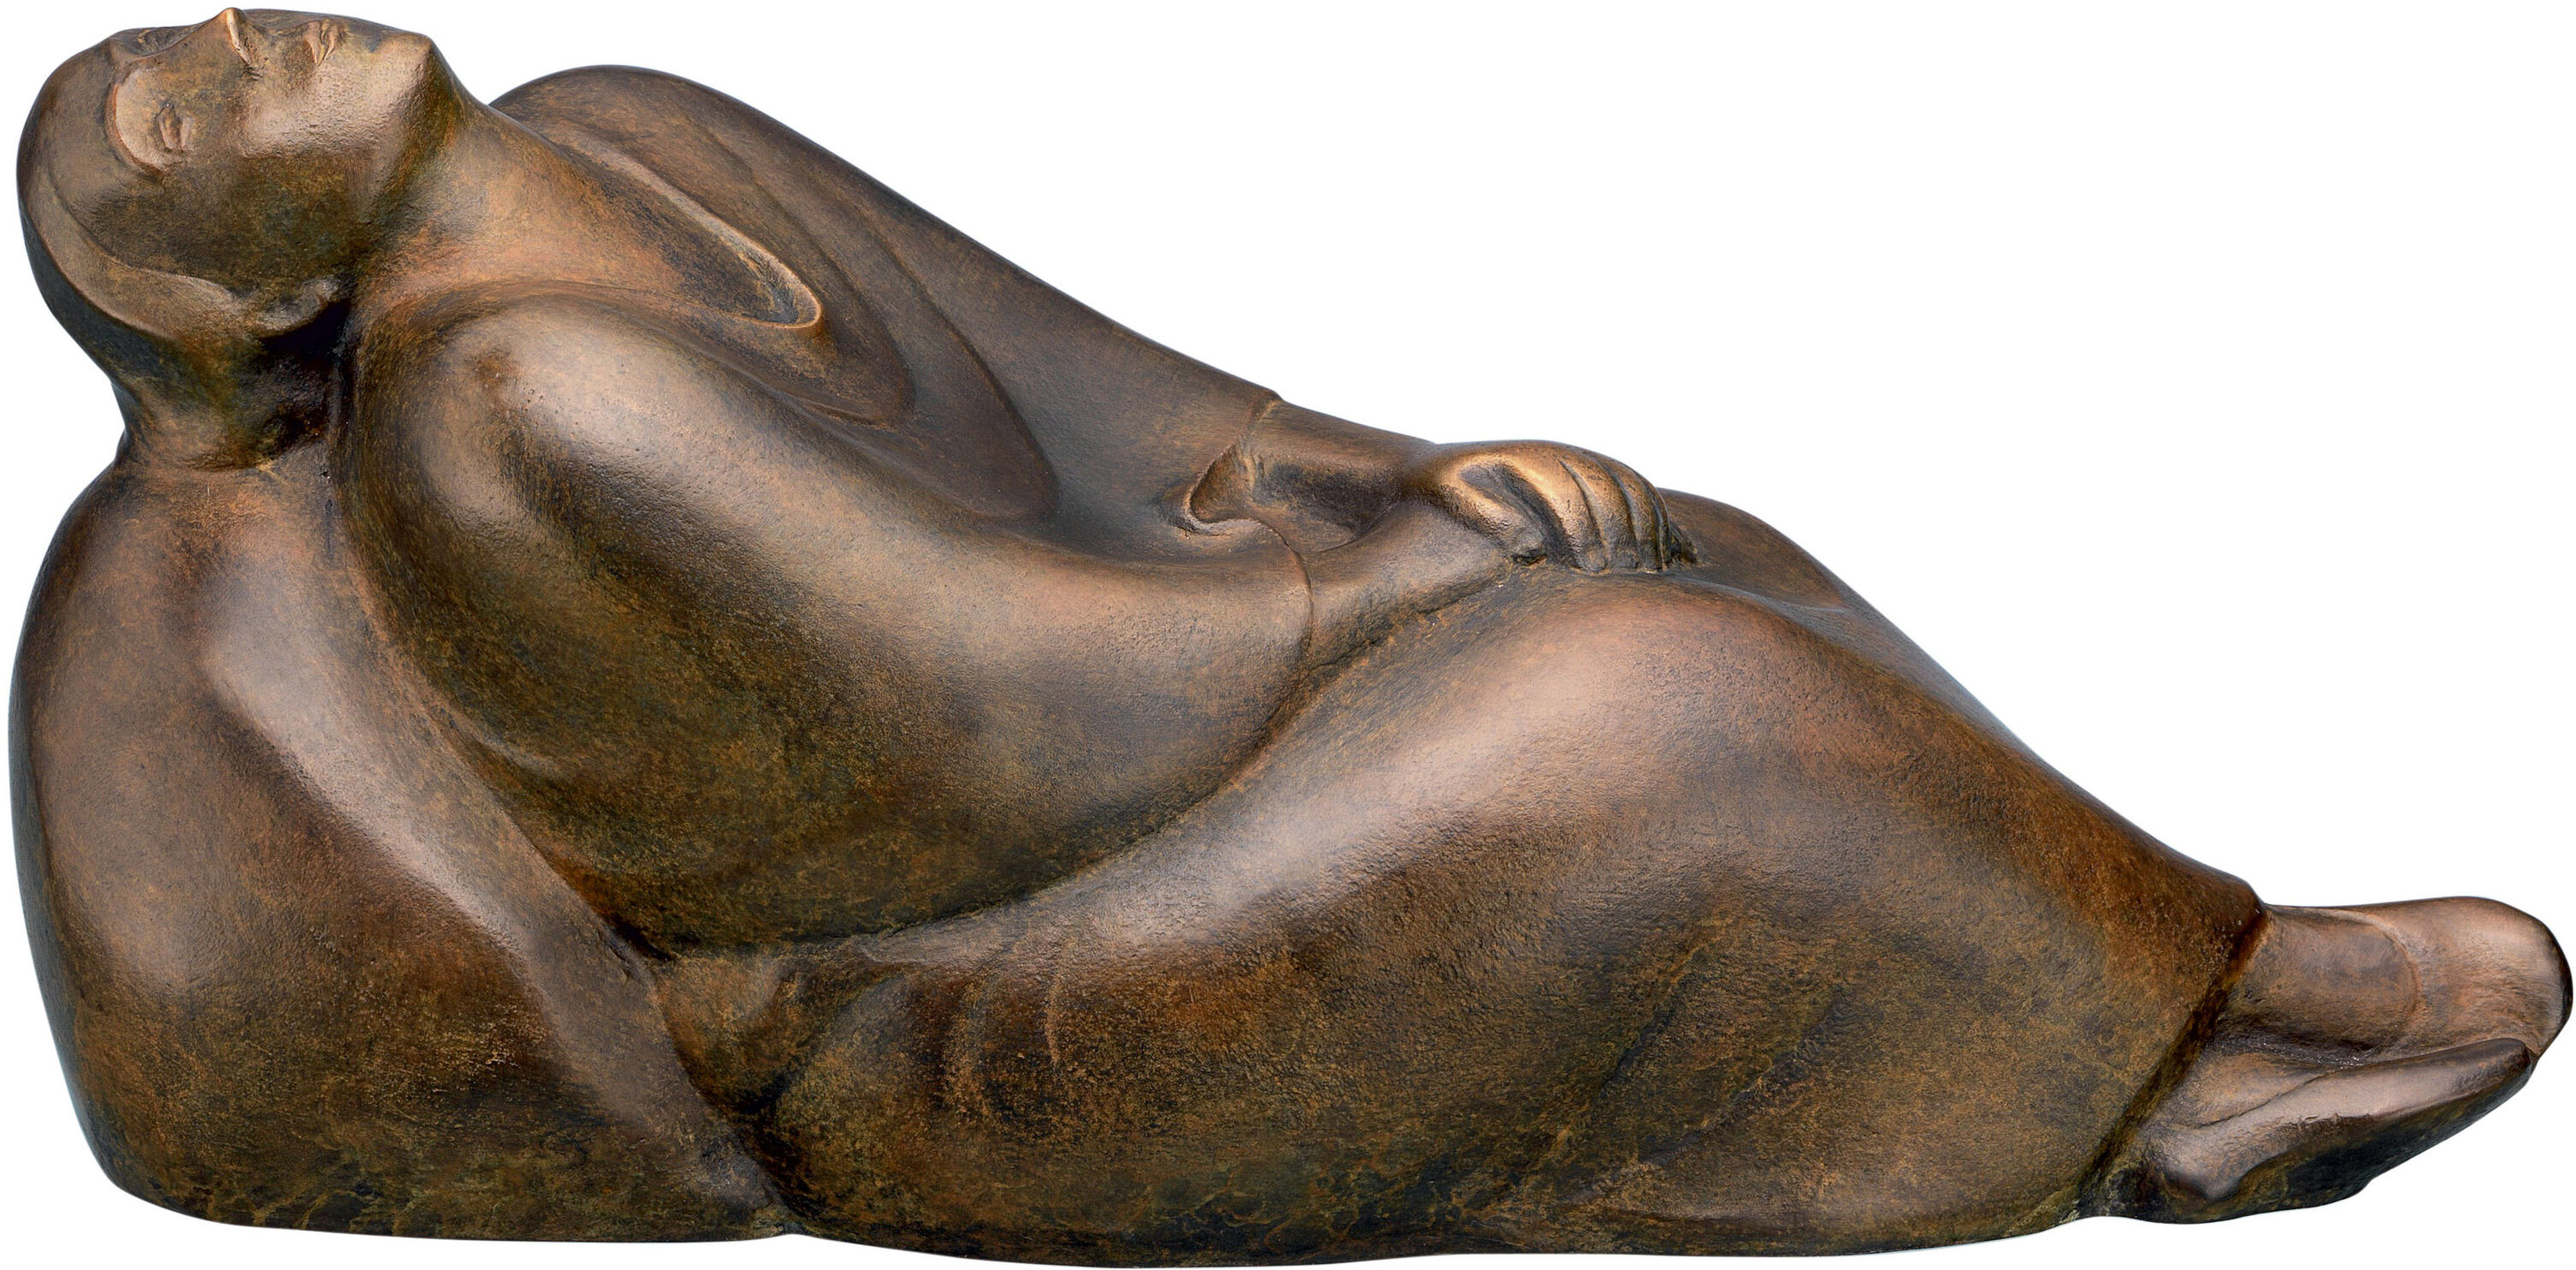 Skulptur "Drømmende kvinde" (1912), bronzereduktion von Ernst Barlach